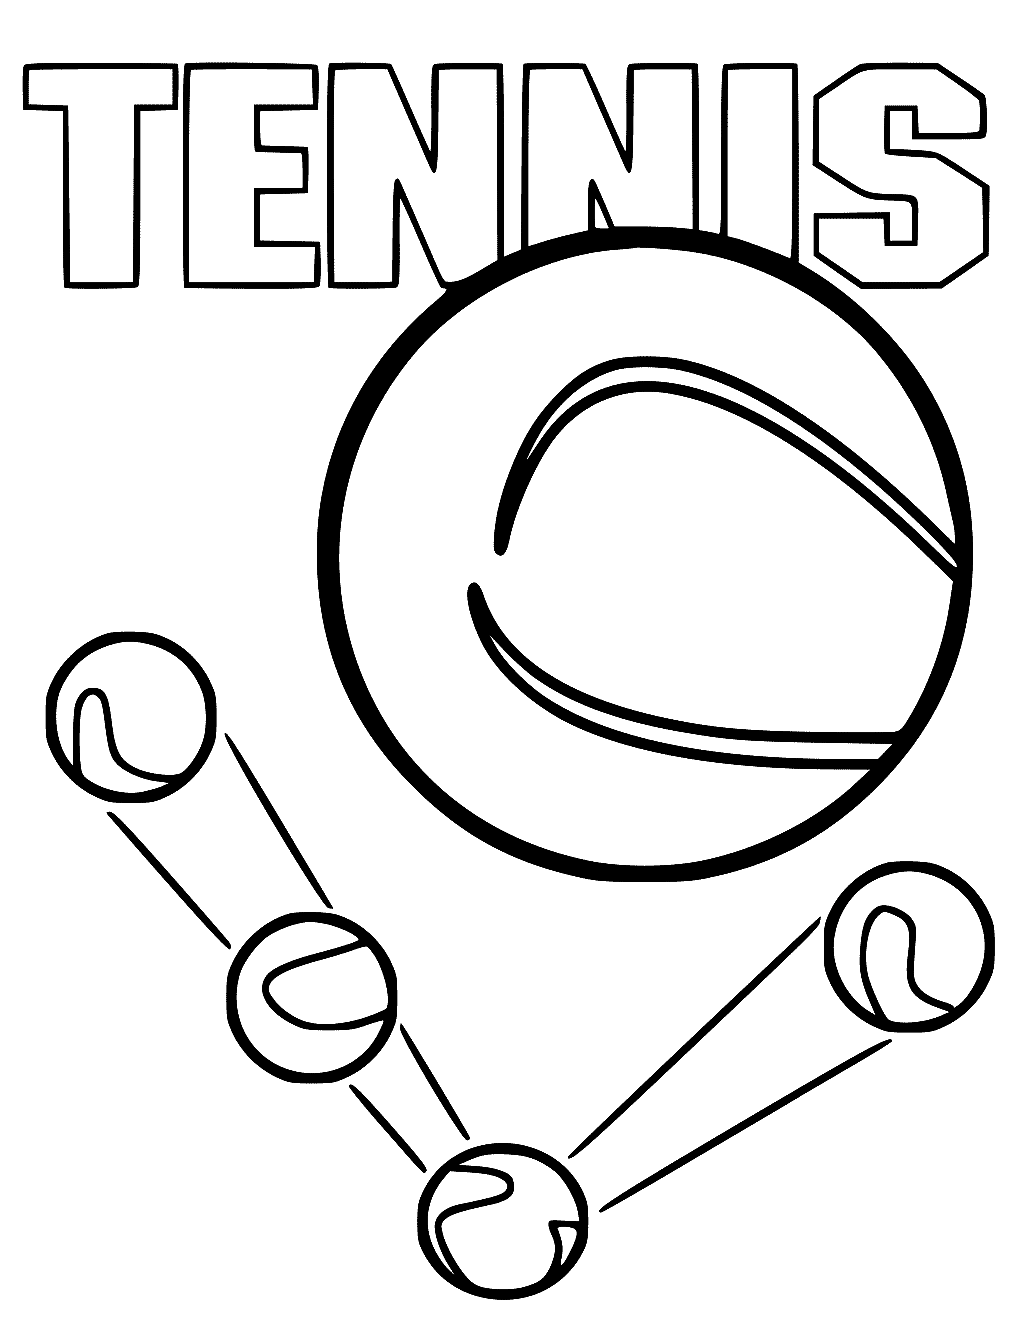 Druckbare Tennis-Malseite